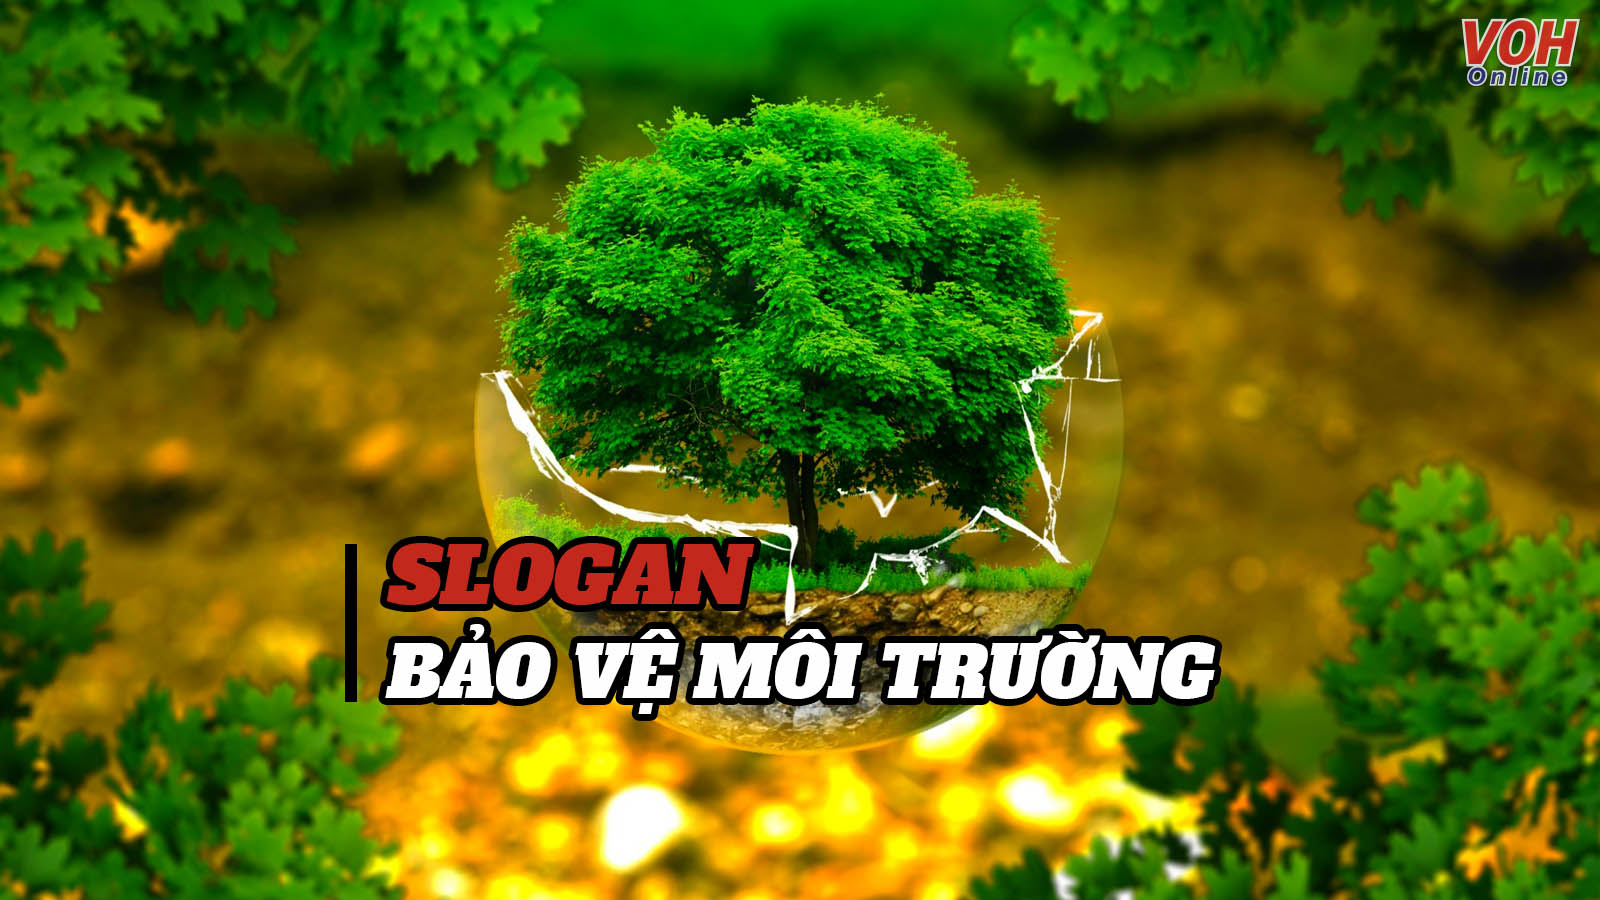 Slogan bảo vệ môi trường - Lời kêu gọi bảo vệ lá phổi xanh của nhân loại